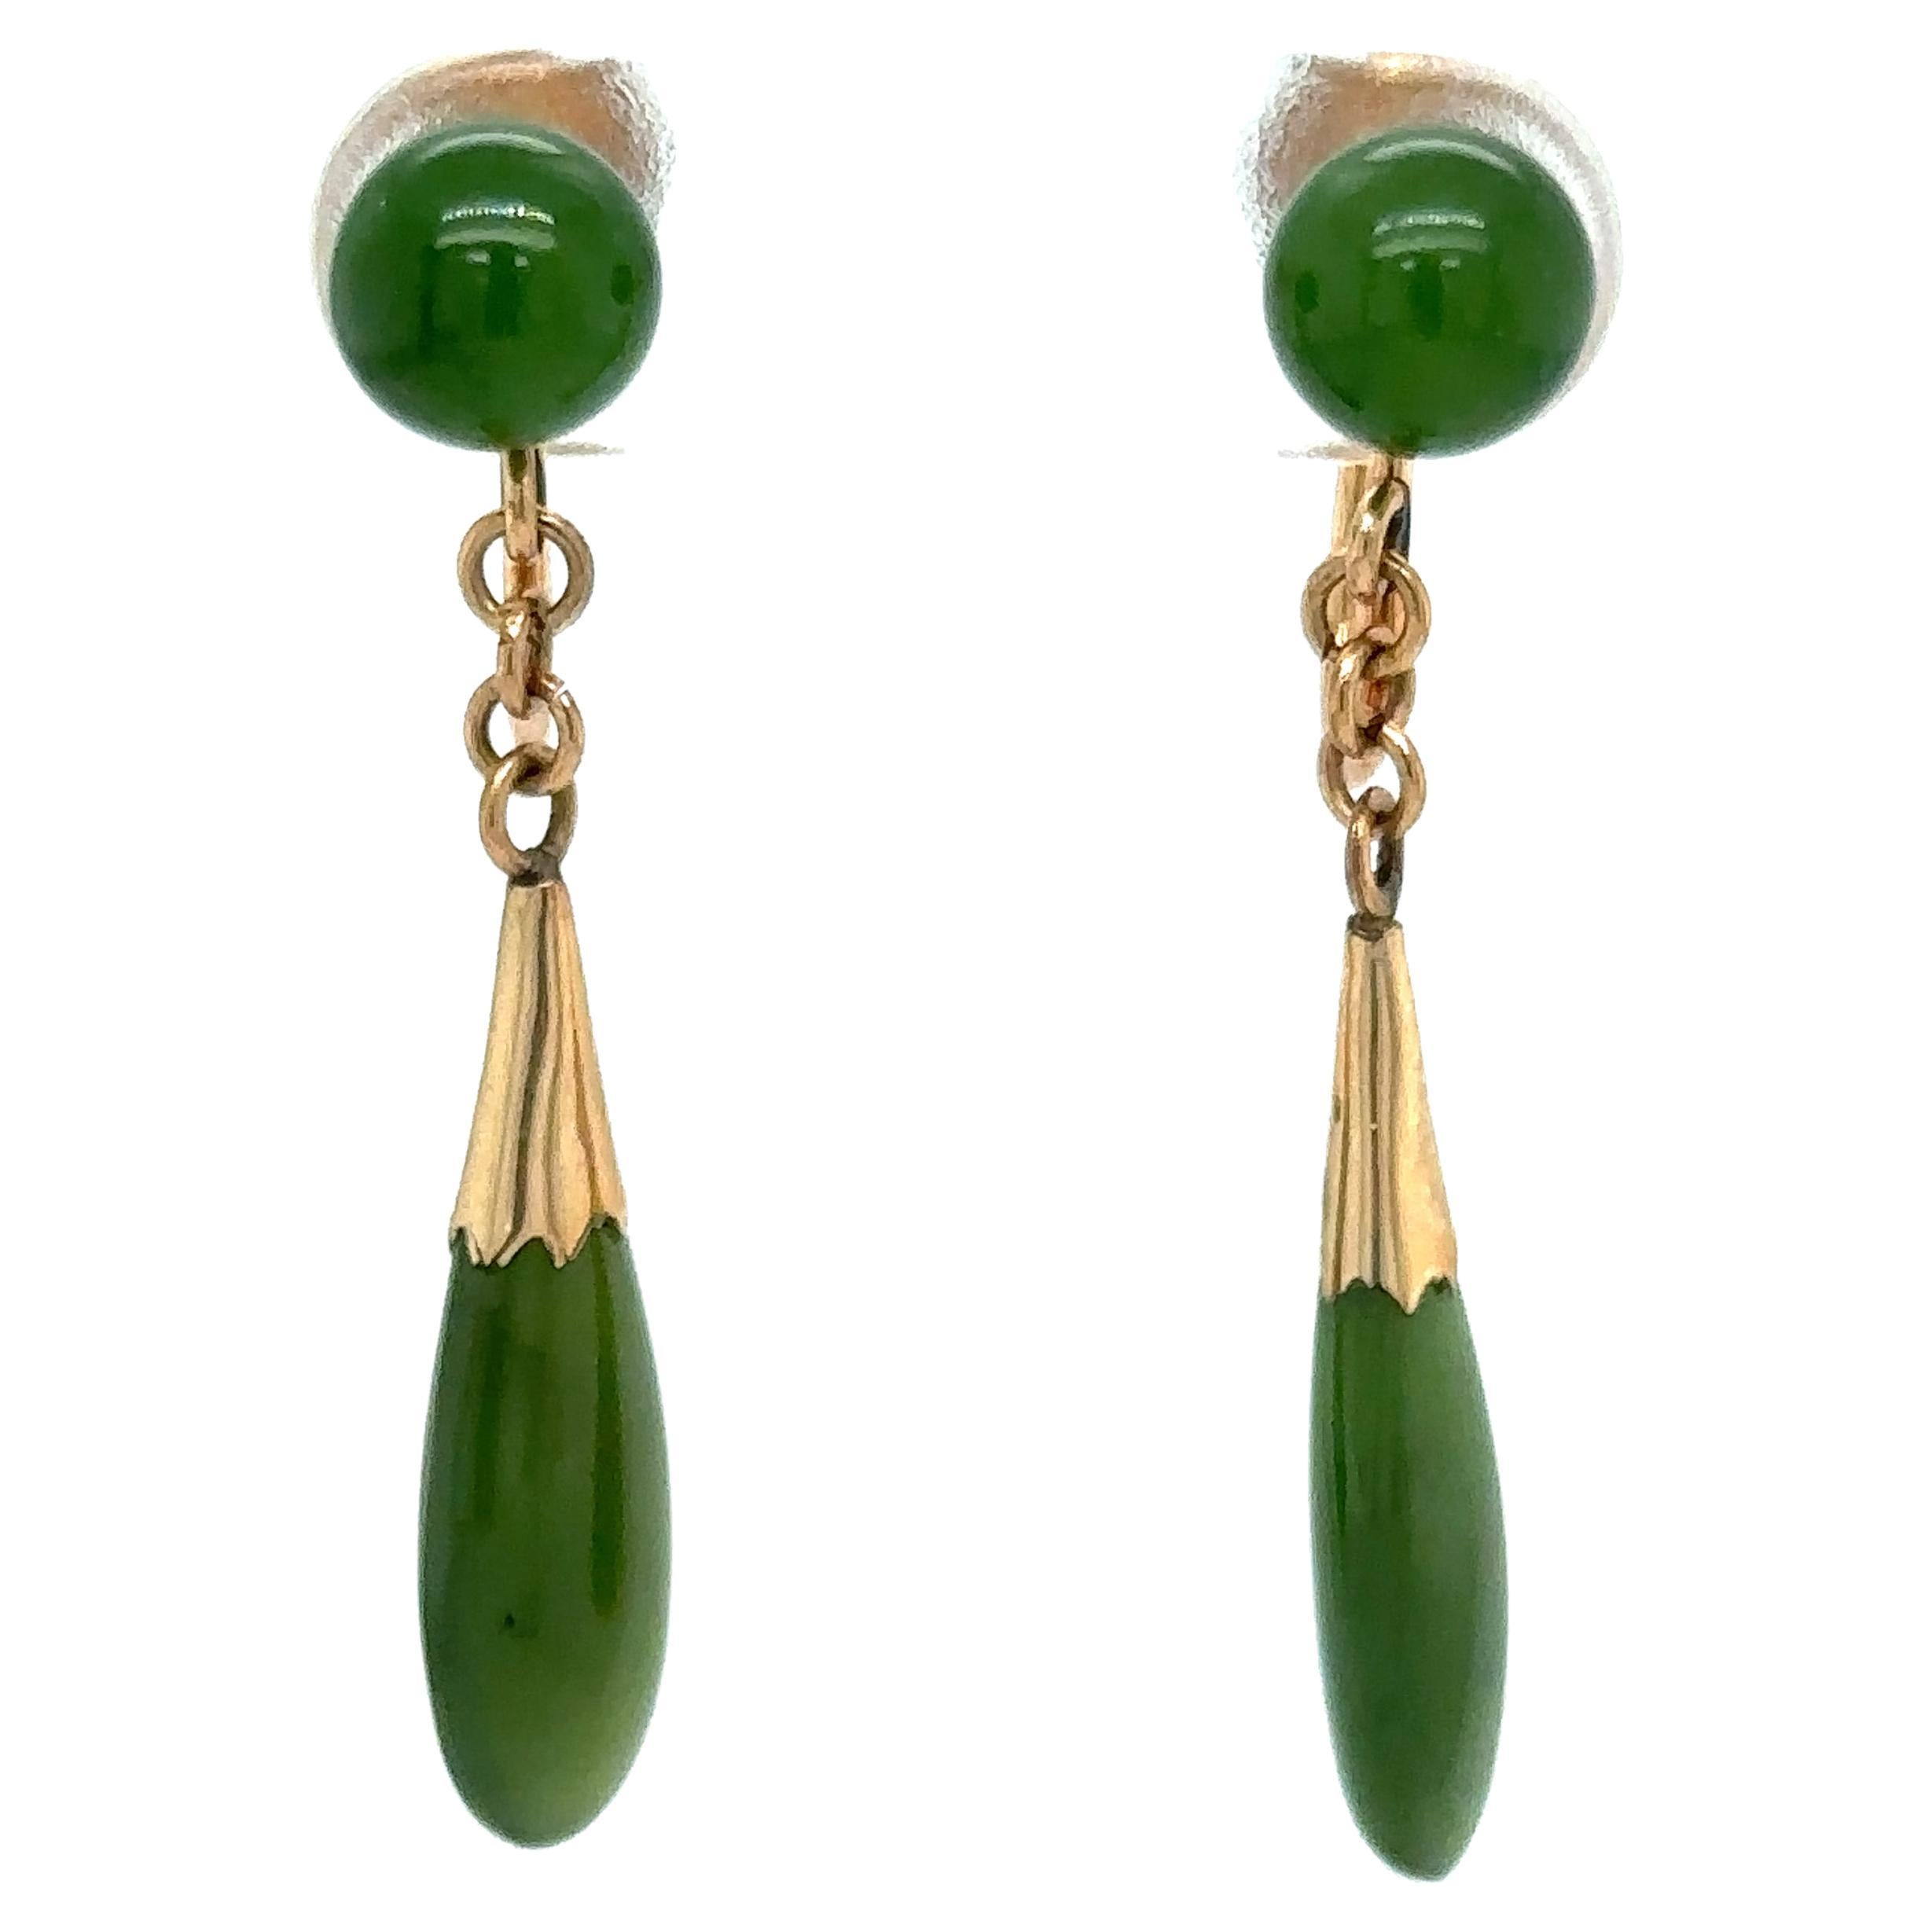 1960s Green Jade Dangle Screw Back Earrings in 14 Karat Gold